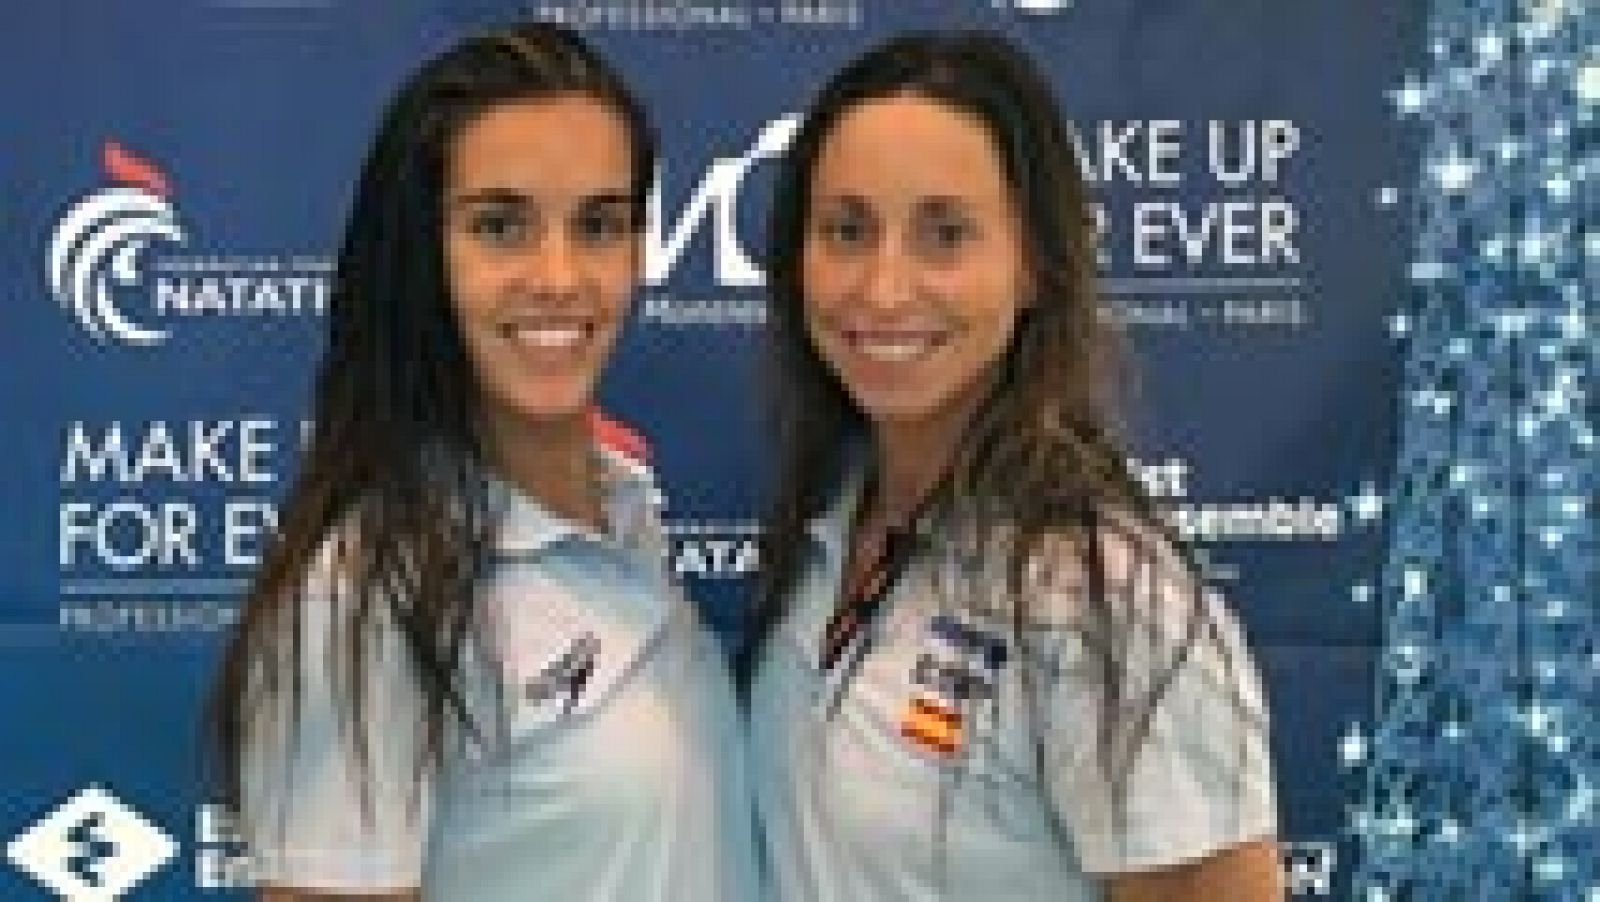 Las españolas Ona Carbonell y Gemma Mengual se adjudicaron este sábado la medalla de oro en la final de dúo técnico de natación sincronizada del Abierto de Francia, que se está disputando en Montreuil, al obtener 88.0049 puntos en su debut como pareja.